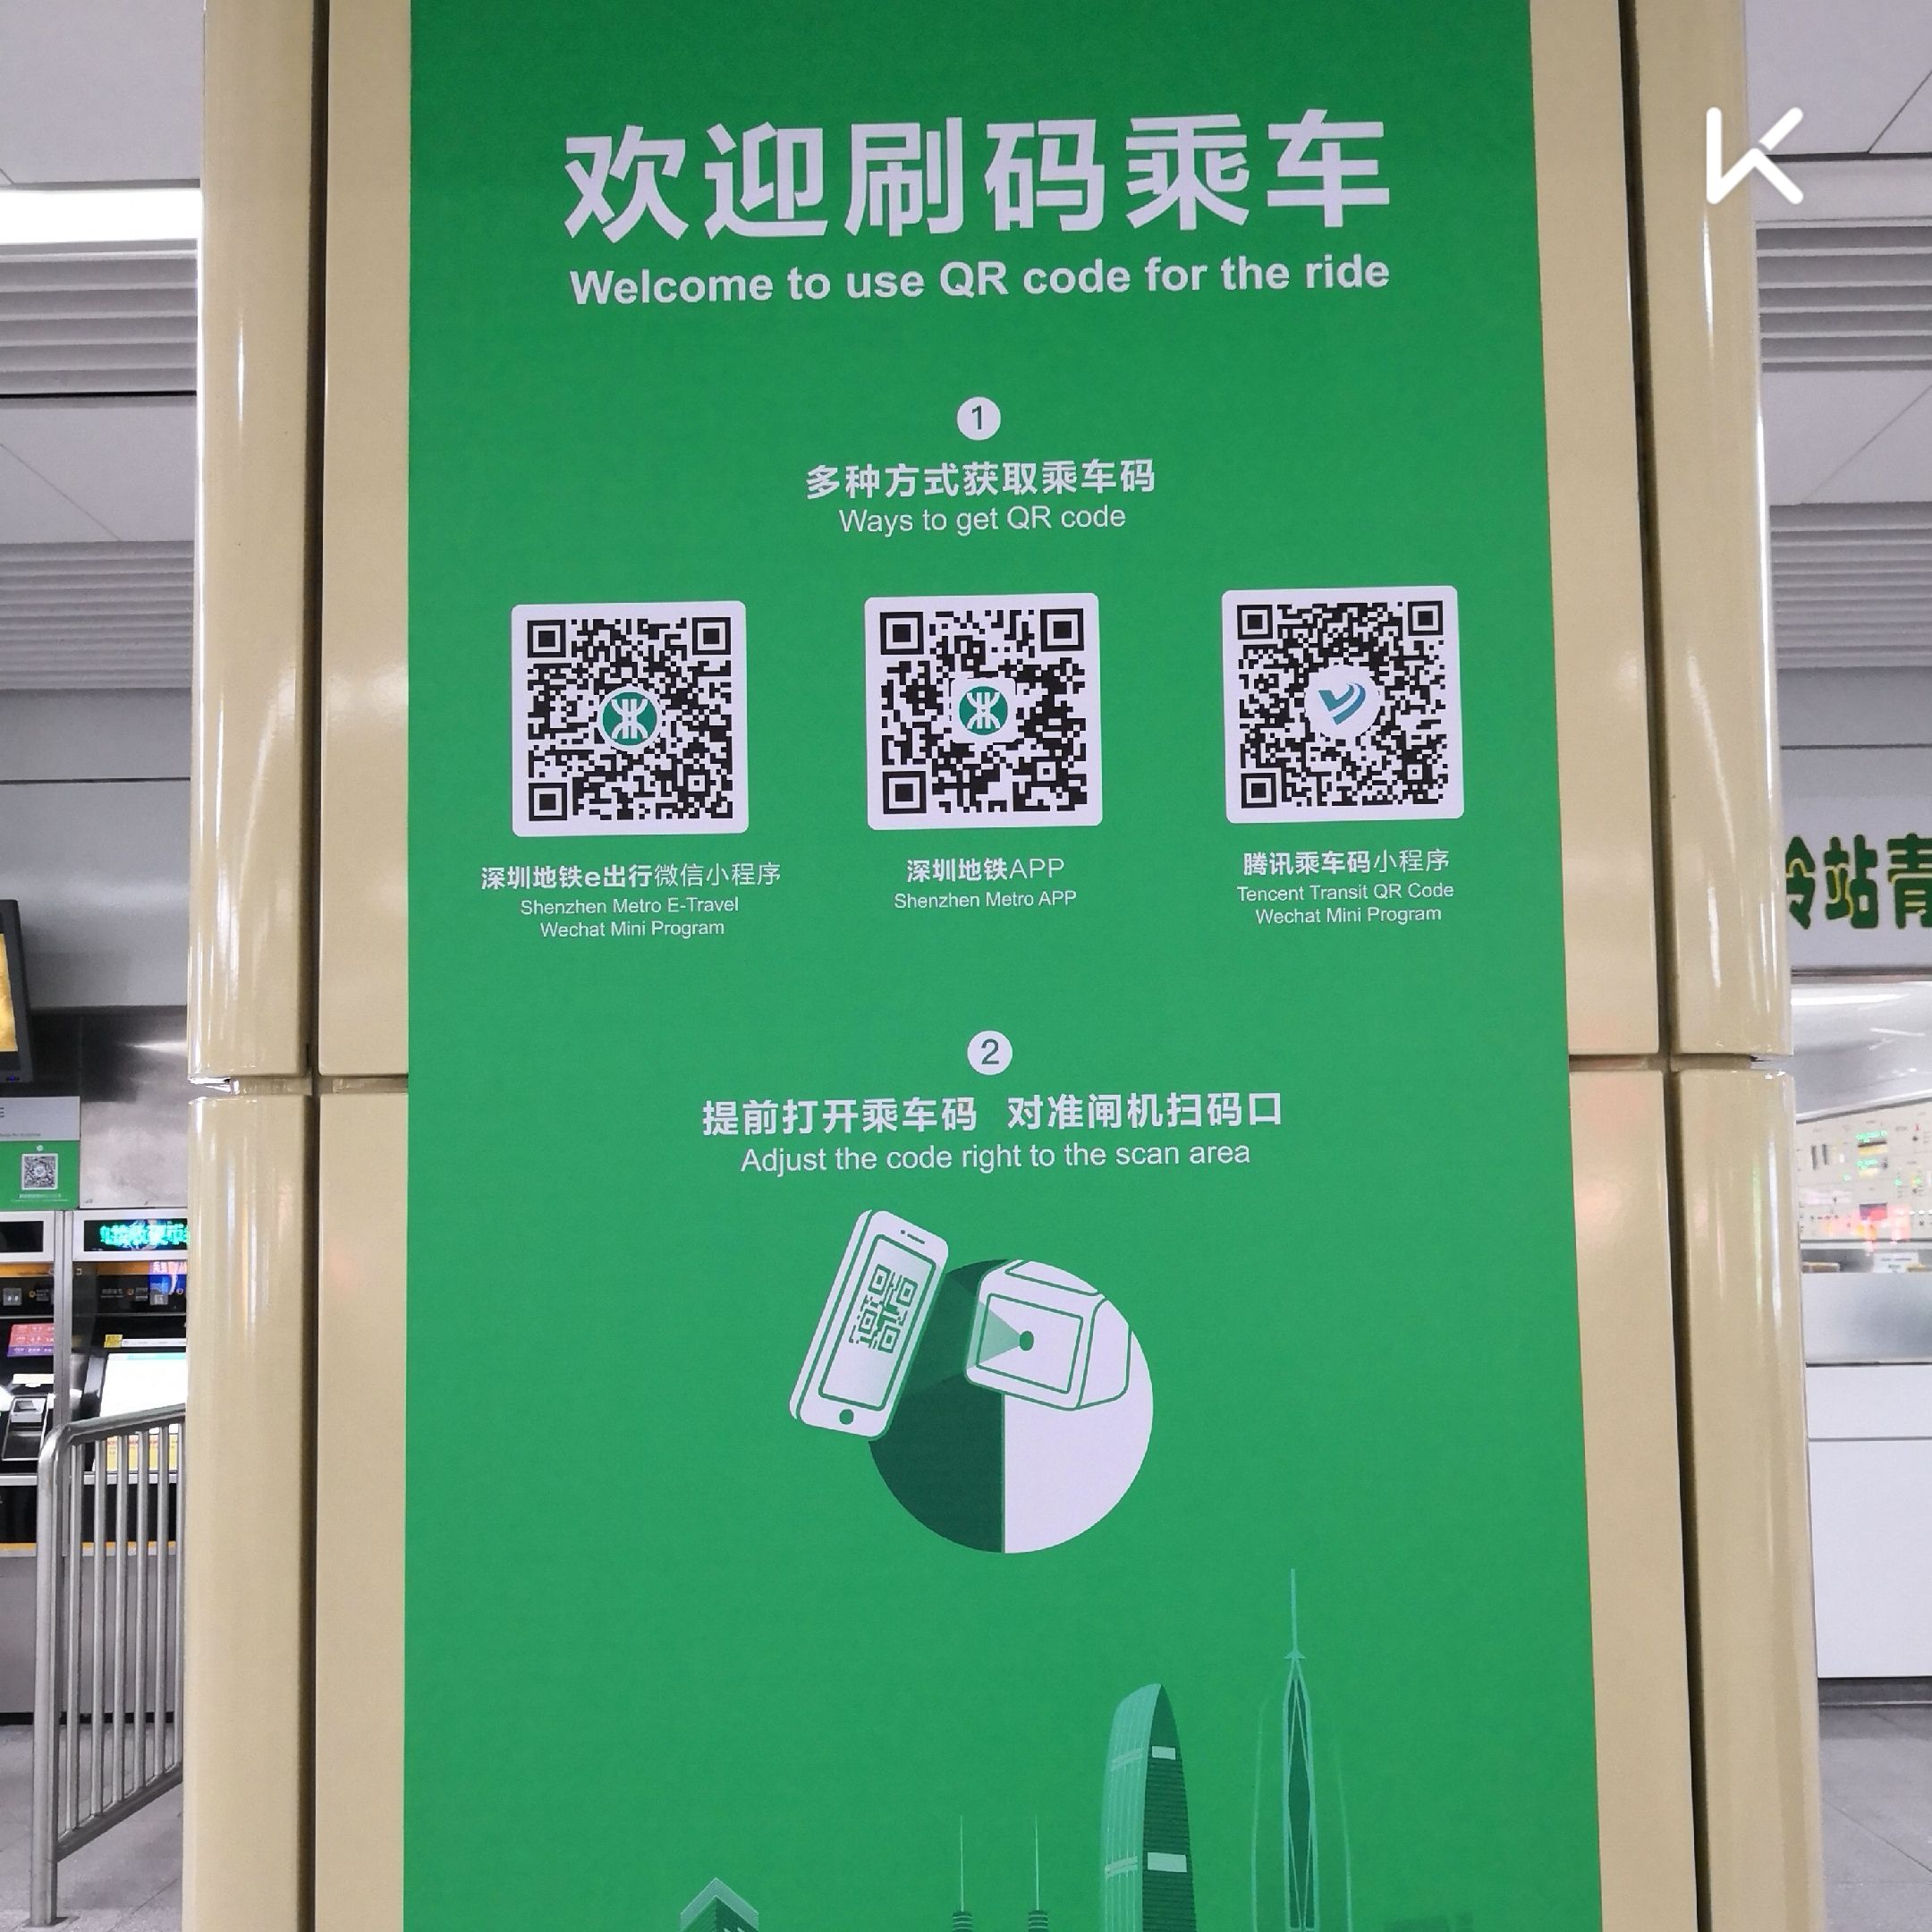 深圳地铁,绿色出行,与时俱进